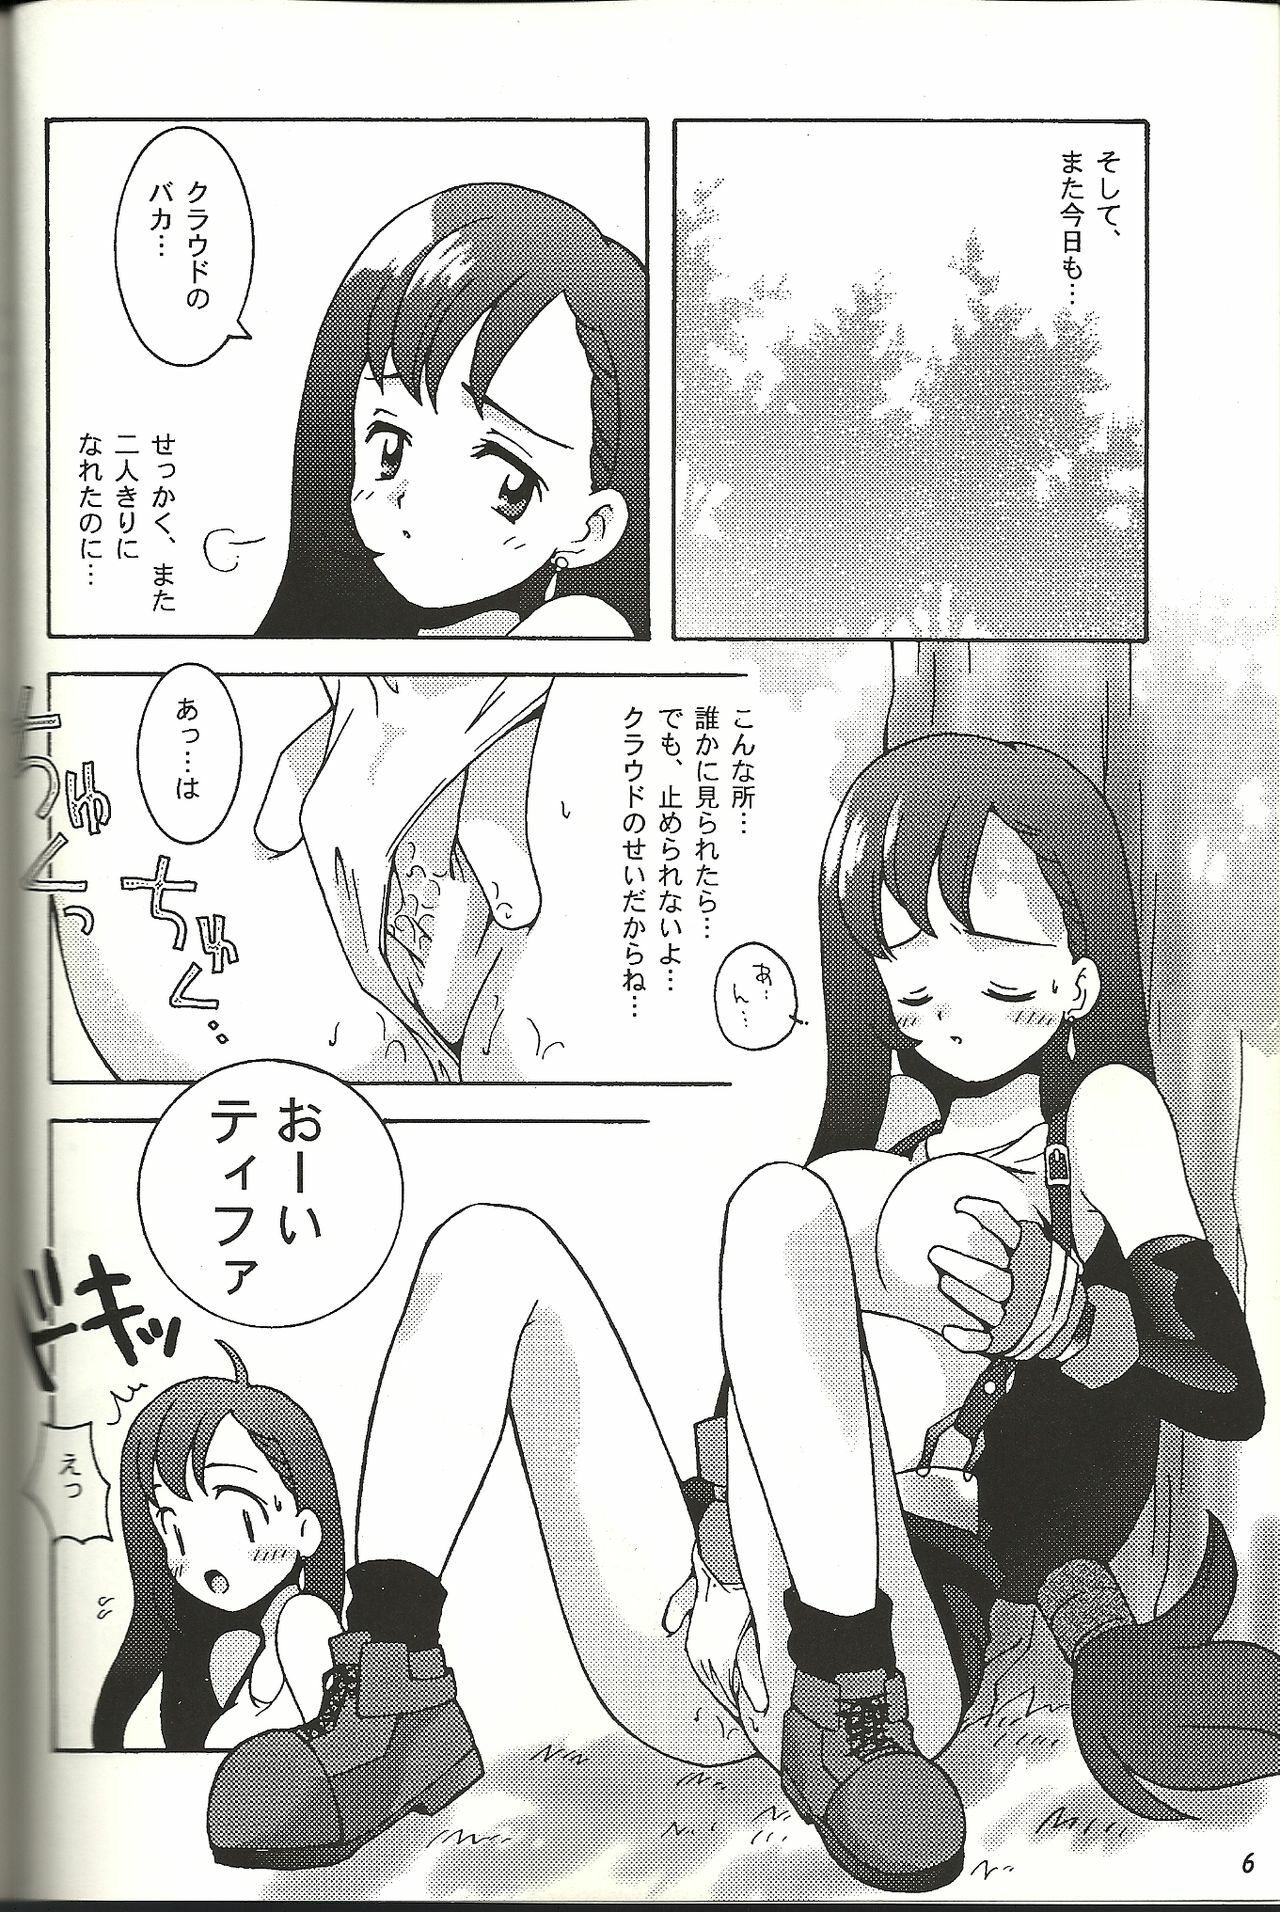 (CR21) [Bakuhatsu BRS. (B.Tarou)] Renai Shiyou (Final Fantasy VII) page 5 full